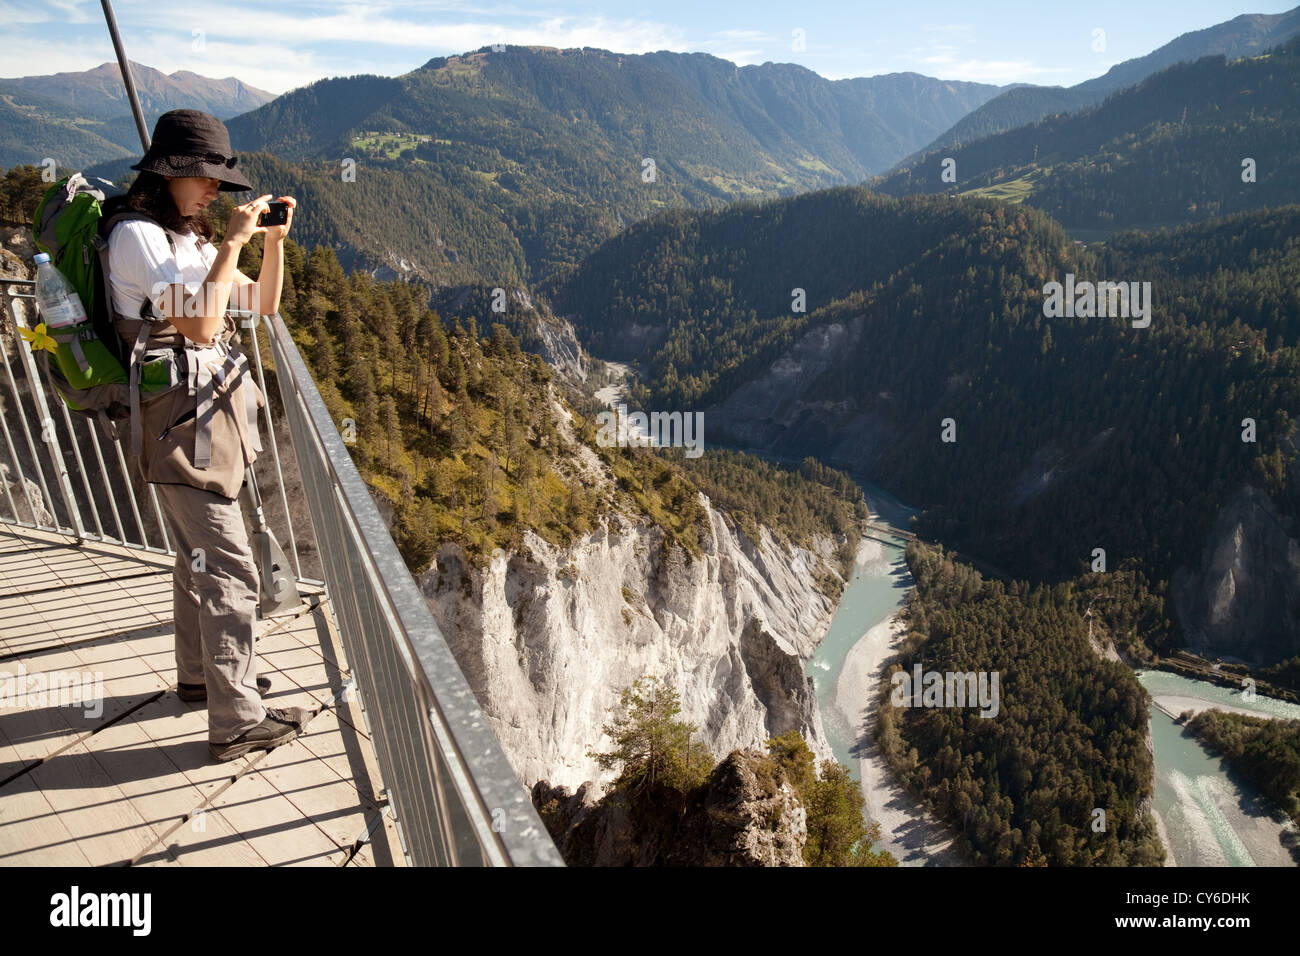 Una donna turistica prendendo una foto da Il Spir guardando giù presso il fiume Reno nella gola a Conn, Flims, Svizzera Foto Stock